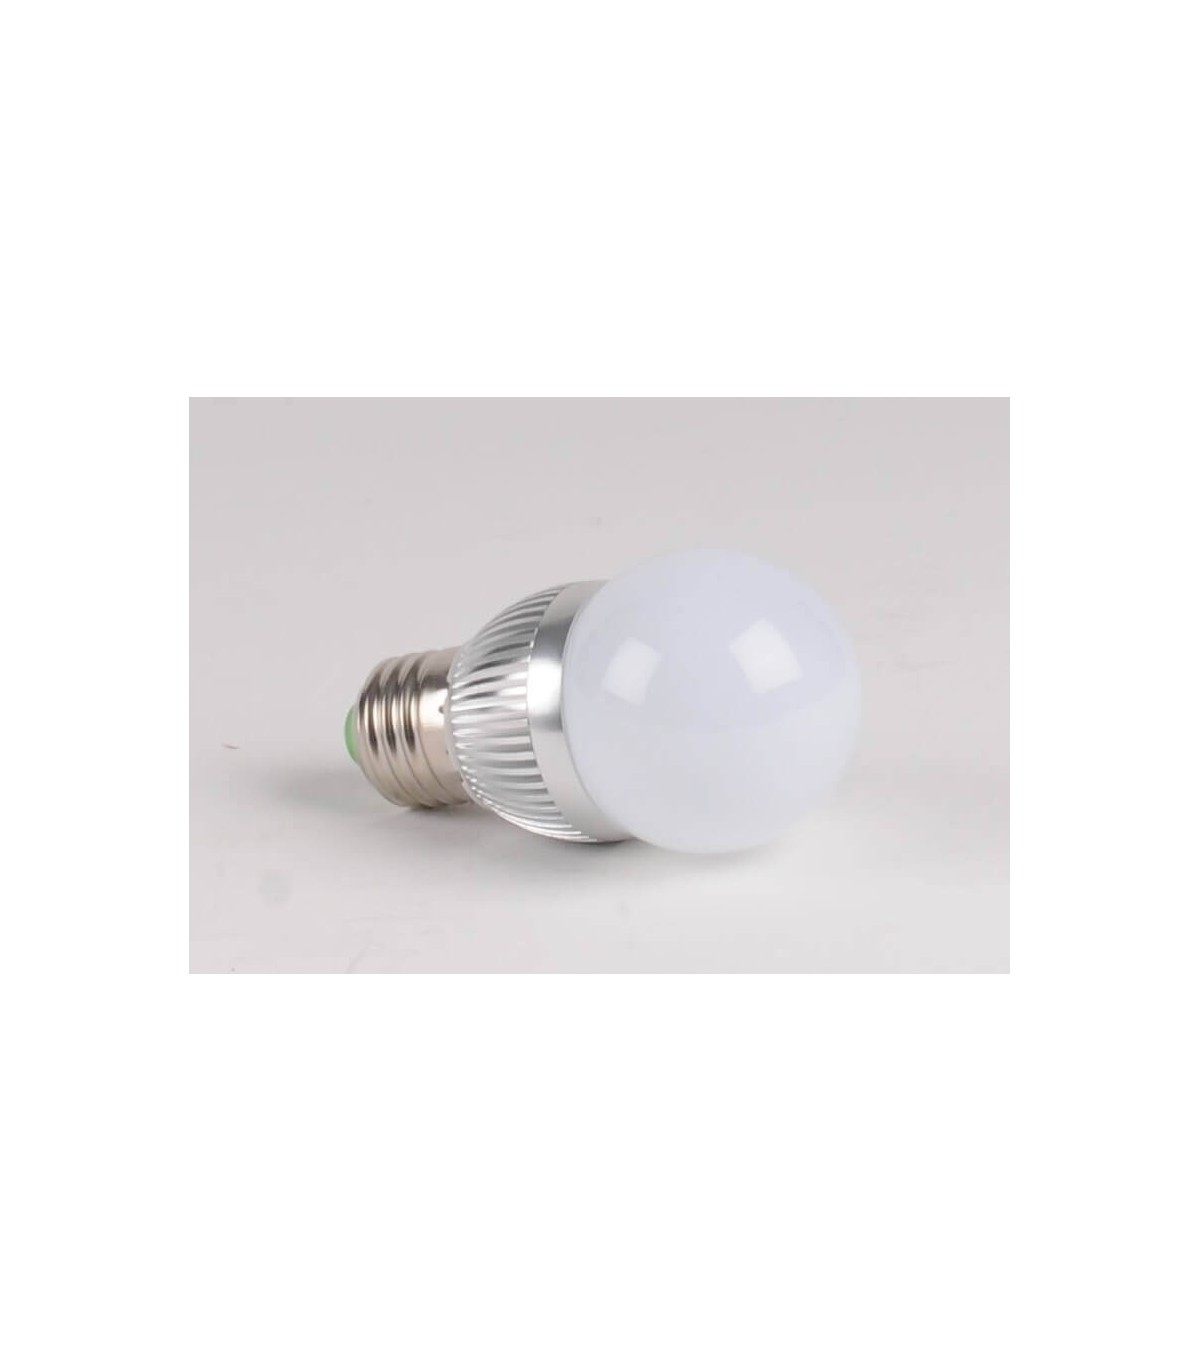 Ampoule GU10 LED 240V 3W 230lm blanc chaud